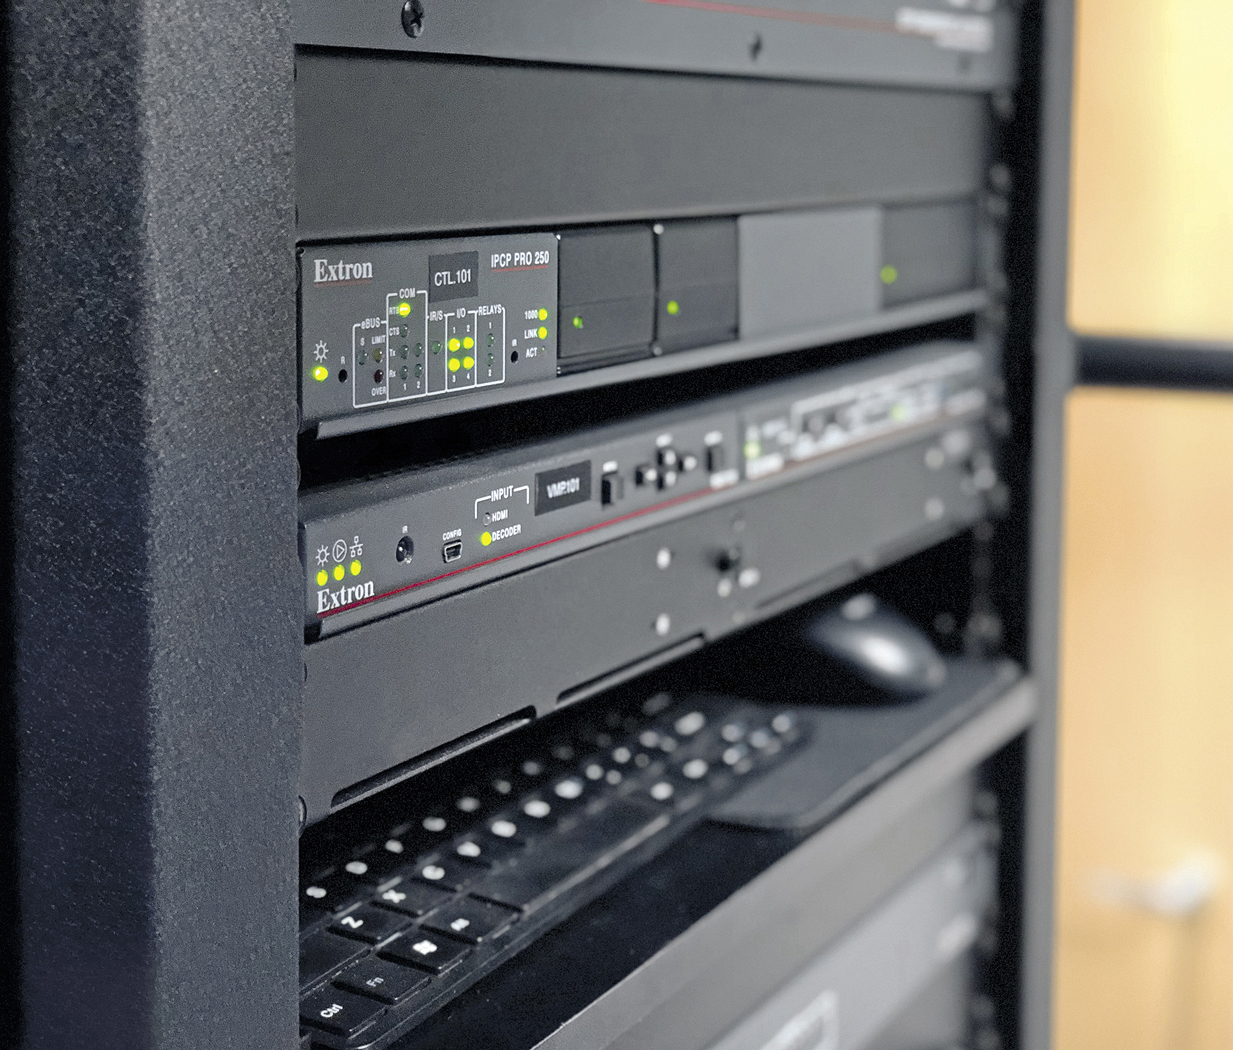 Il formato compatto e l'efficienza energetica dei vari prodotti Extron, come il processore di controllo IPCP Pro 250 e il decoder di streaming SMD 202, hanno permesso di alloggiare le apparecchiature in un unico rack principale.